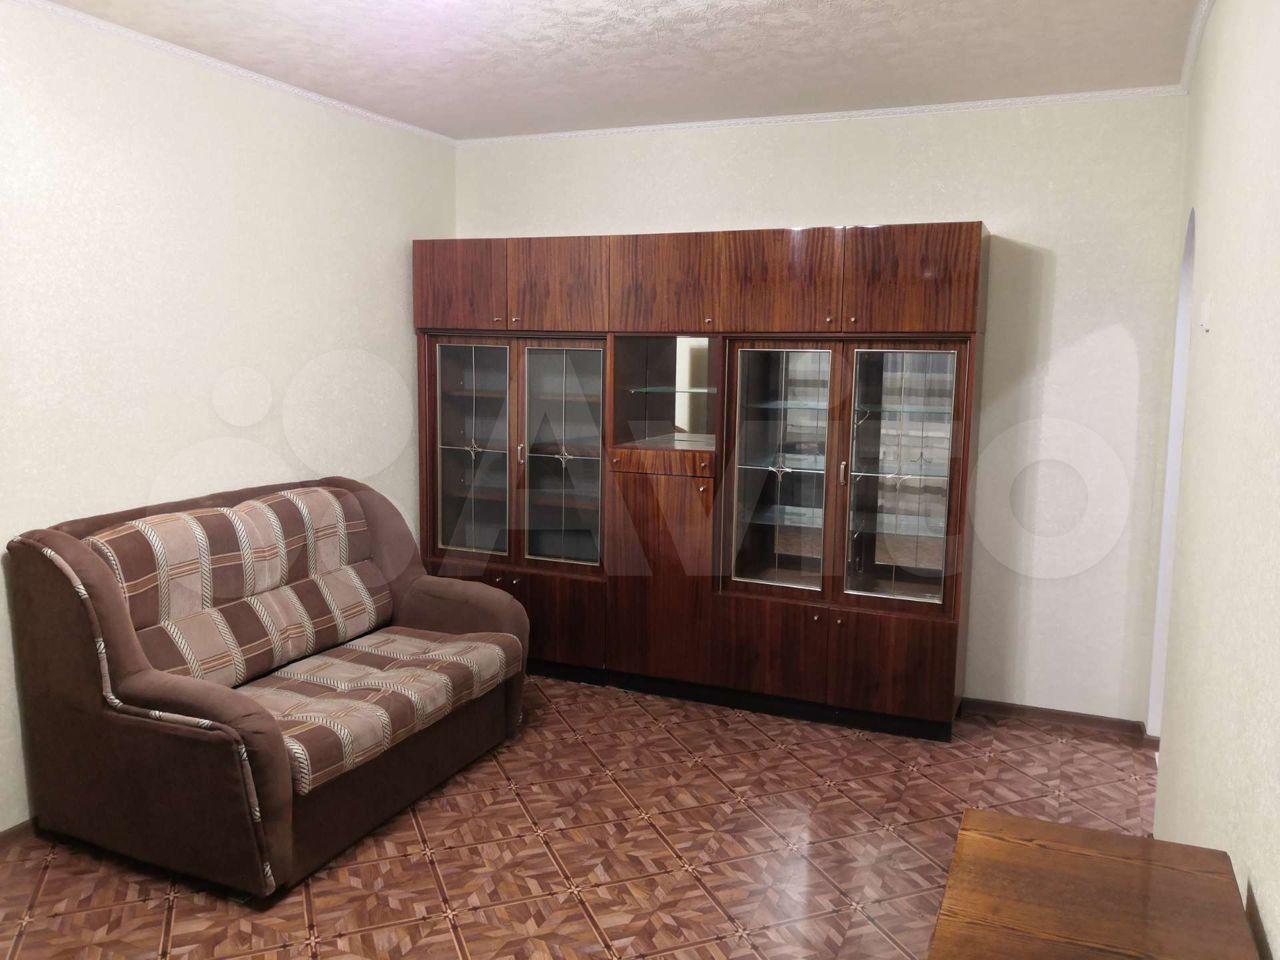 Снять квартиру в пскове на длительный срок от хозяина 1 комнатную с мебелью